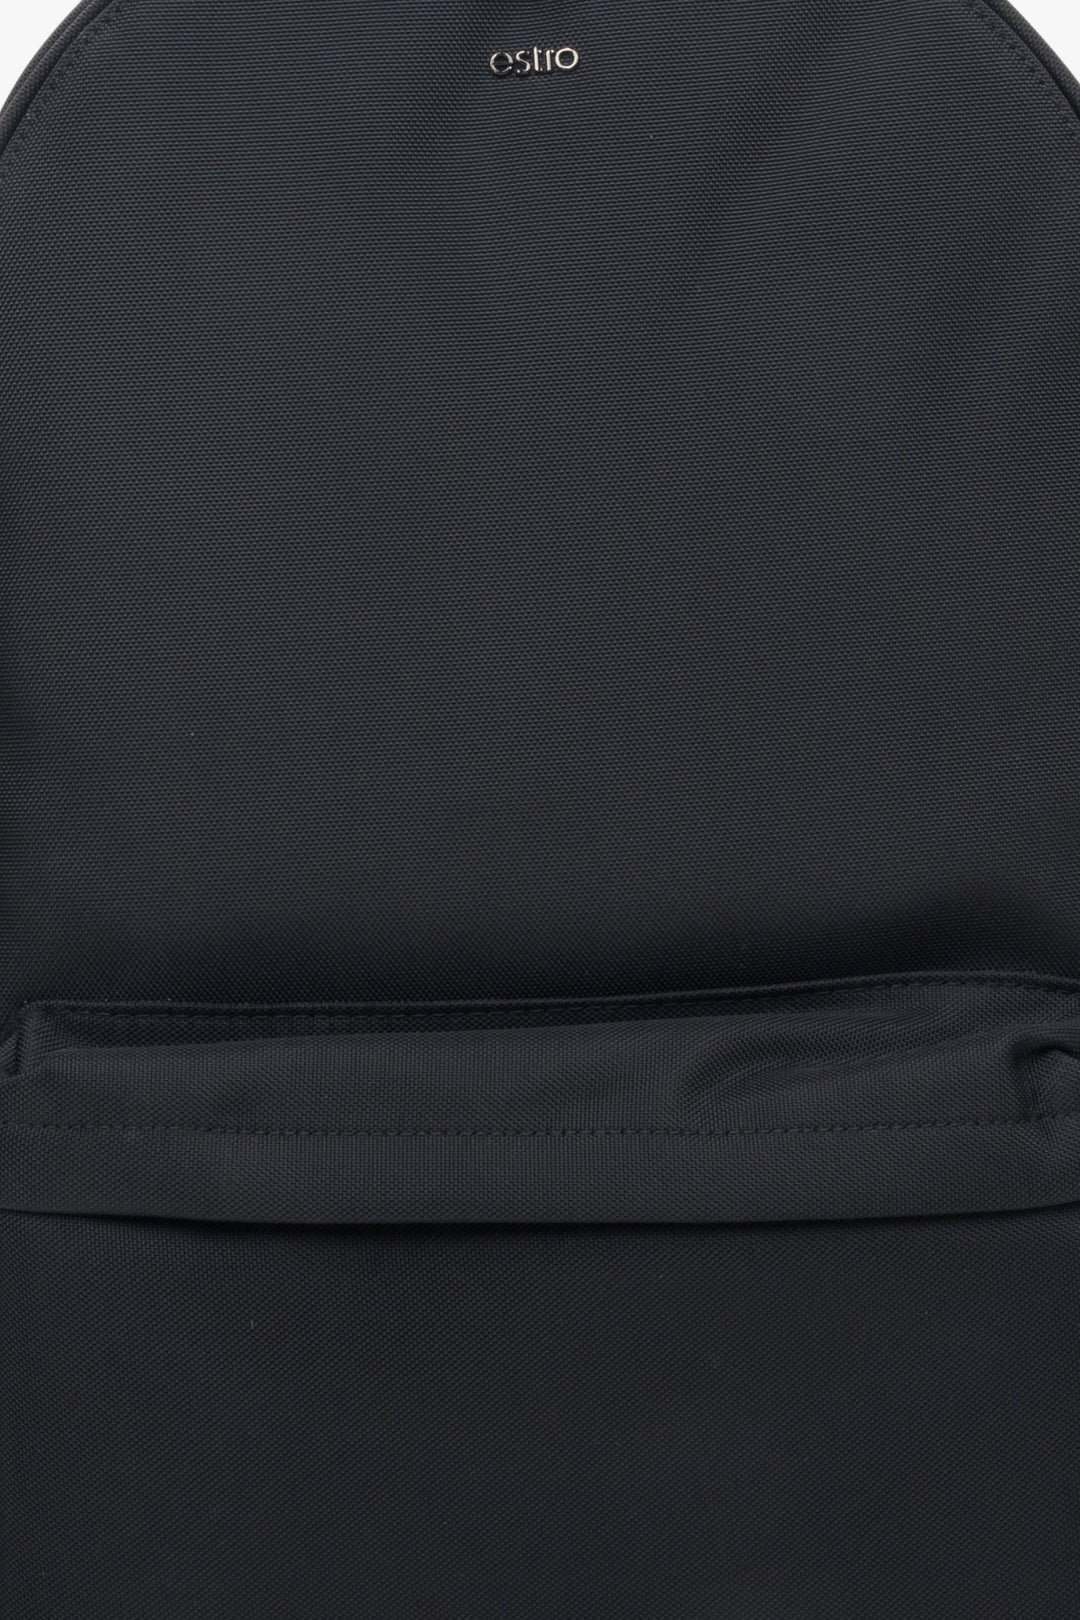 Męski, nylonowy plecak w kolorze czarnym Estro - przód modelu.